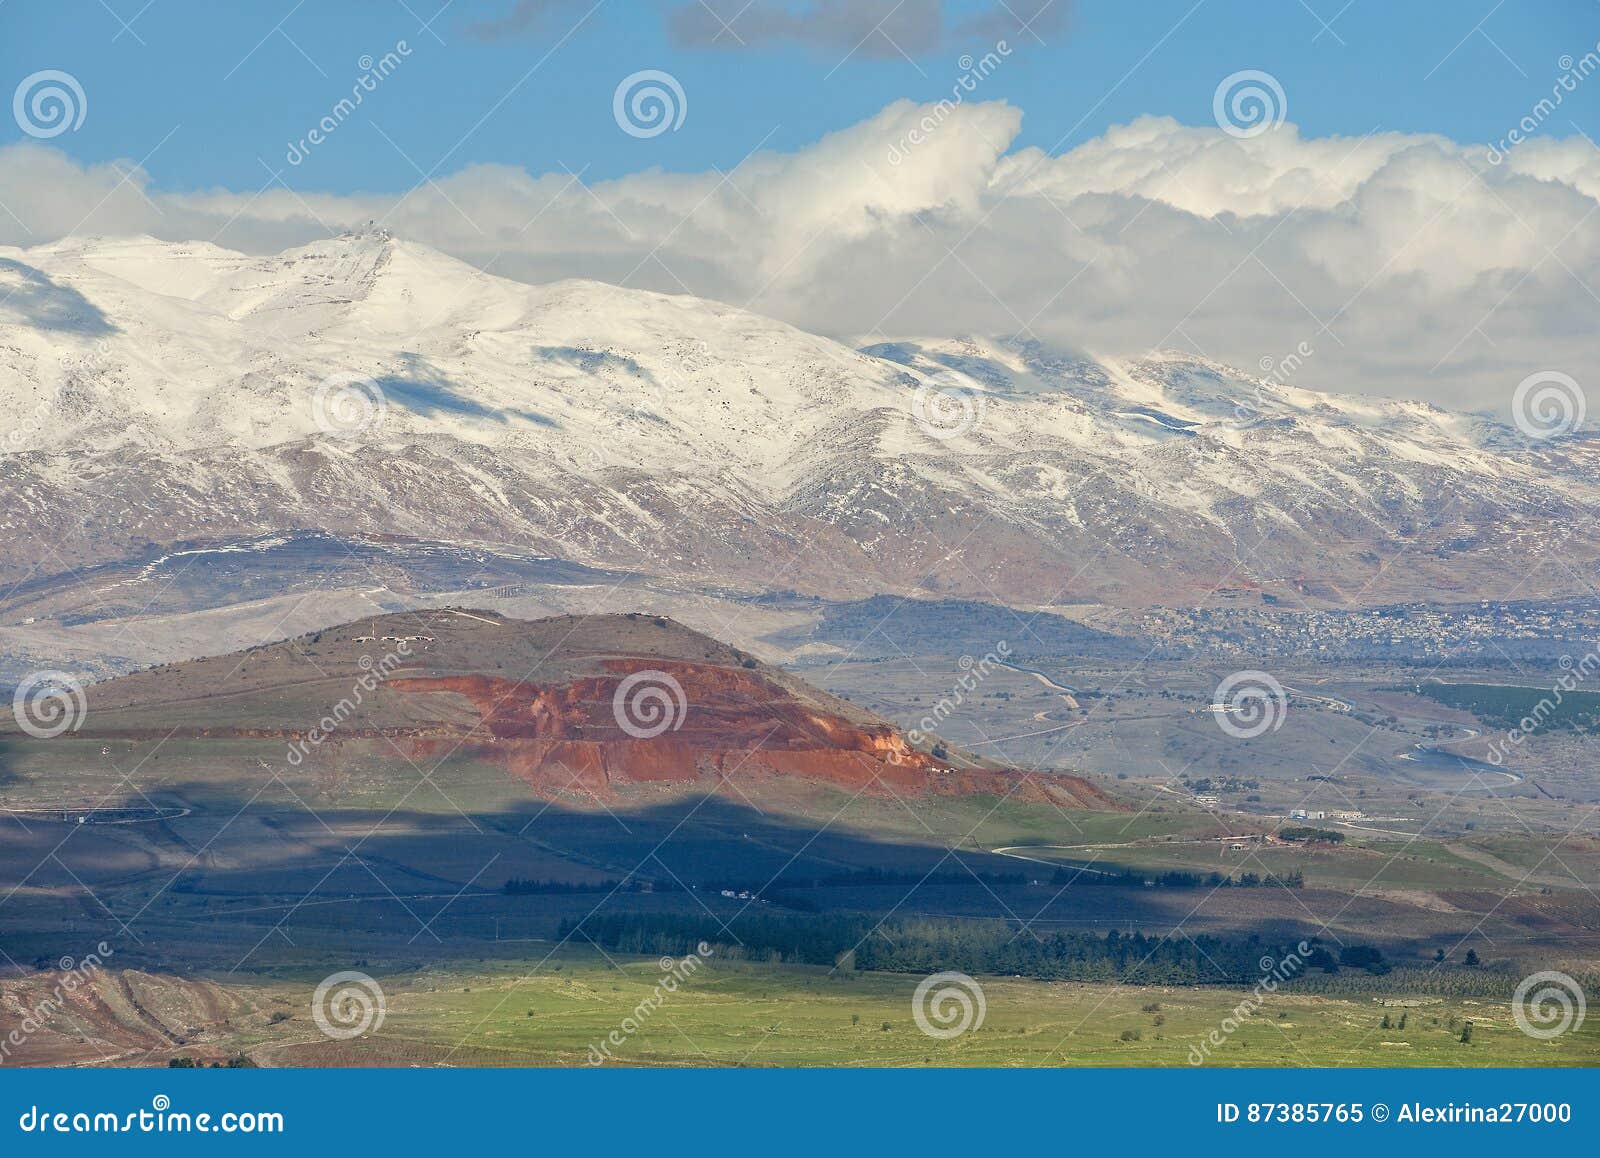 snow on mount hermon, golan heights, israel